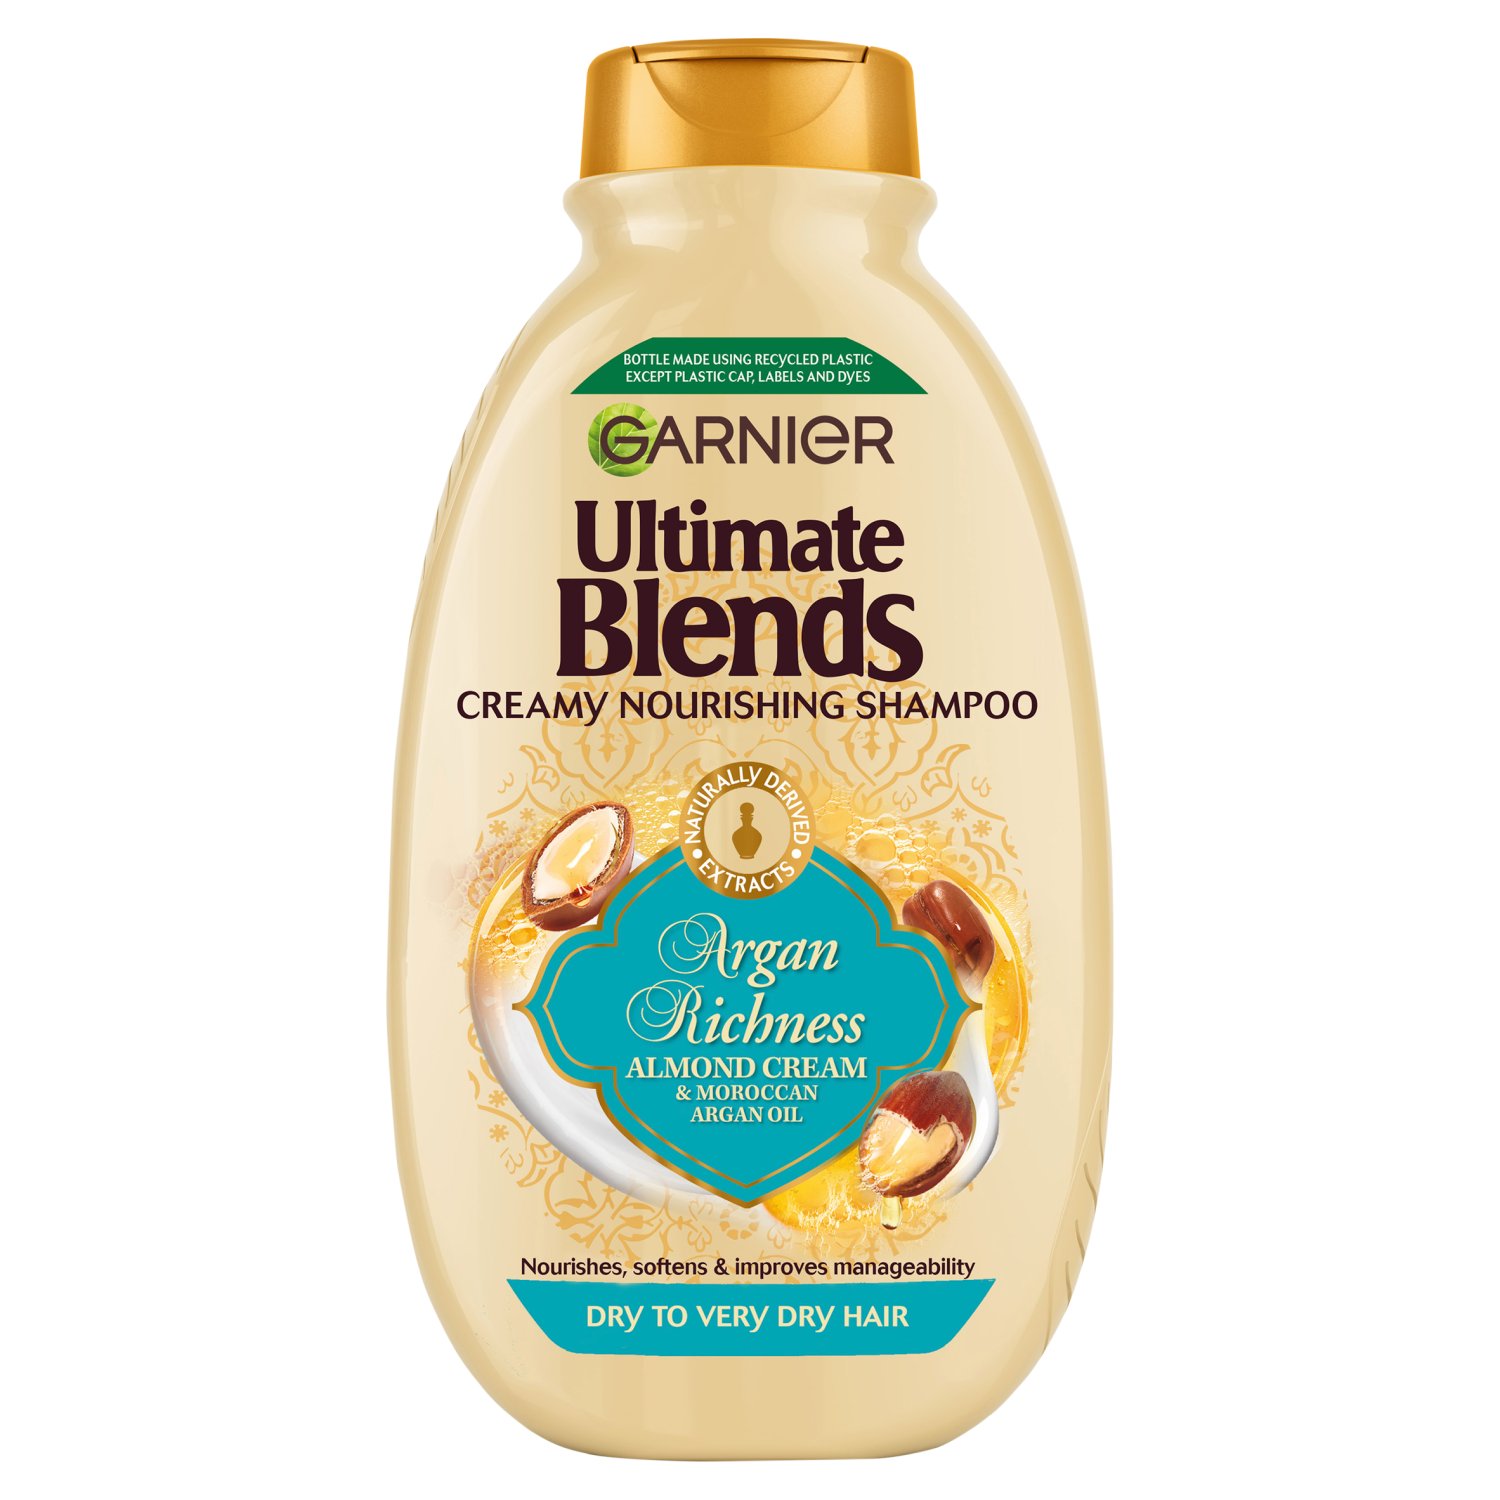 Garnier Ultimate Blends Core Argan Richness Shampoo (400 ml)